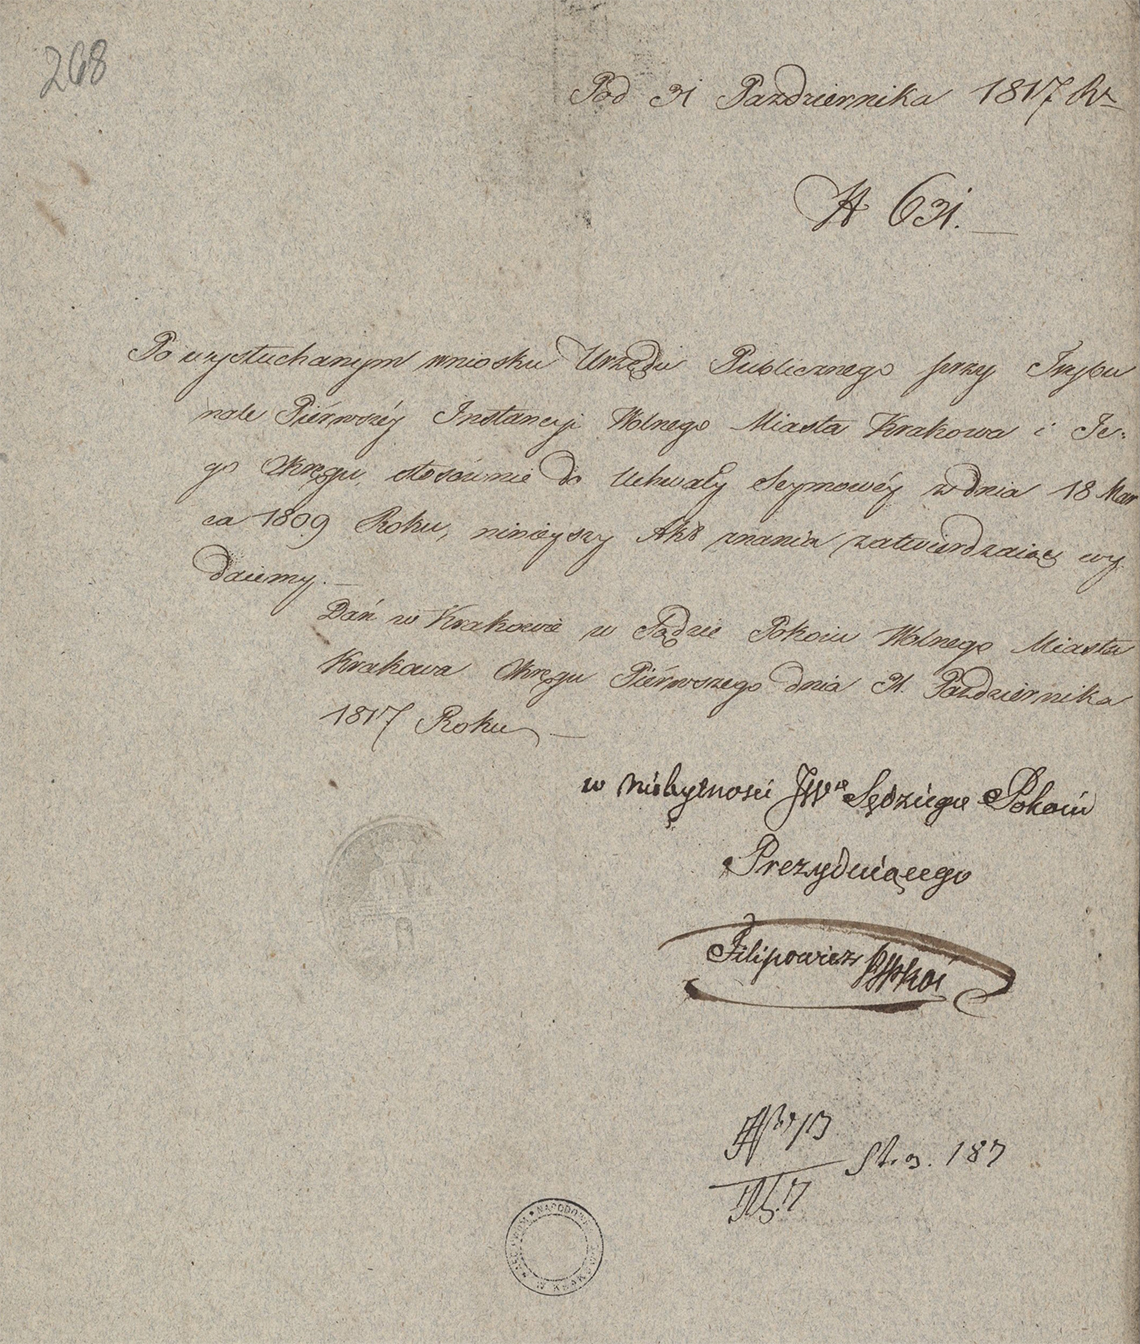 Alegaty do małżeństwa Stanisław Gostkowski & Martyna Apolonia Cieński (03.11.1817 r.) (9)